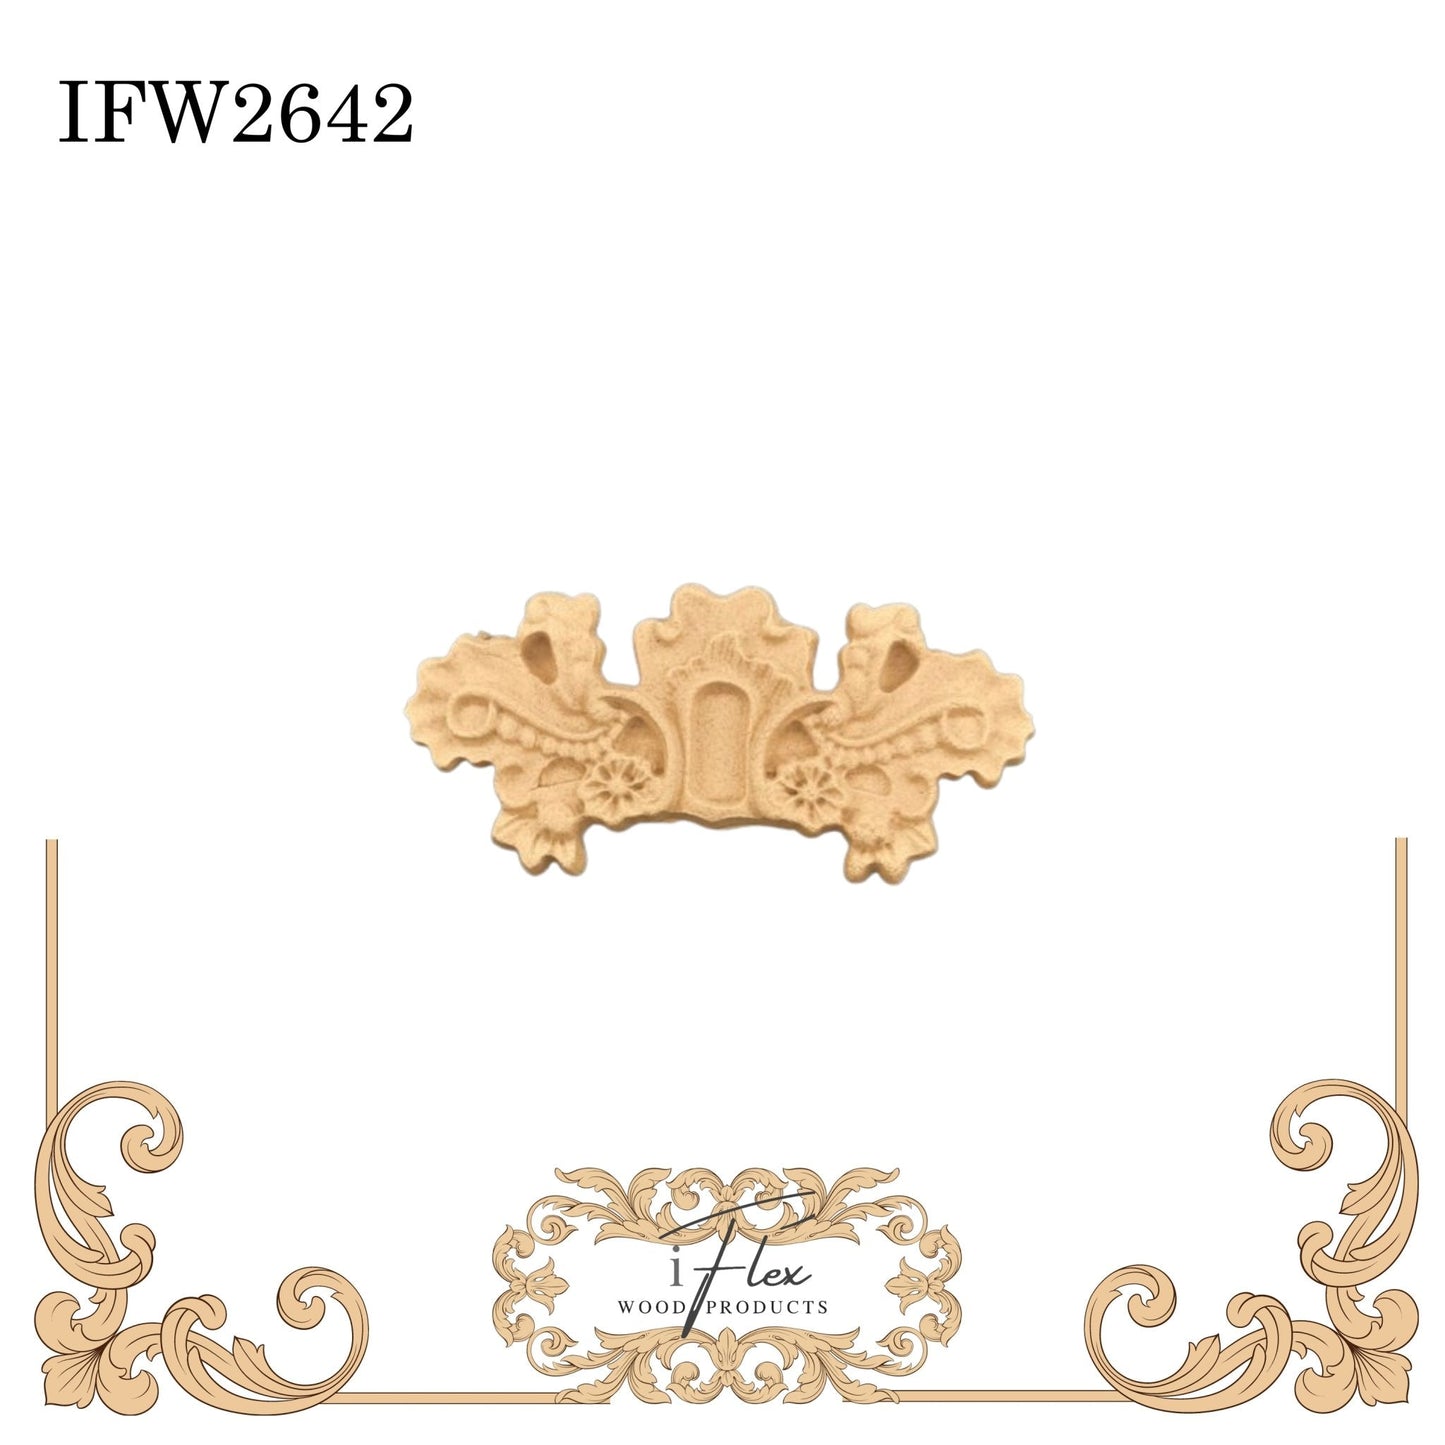 IFW 2642